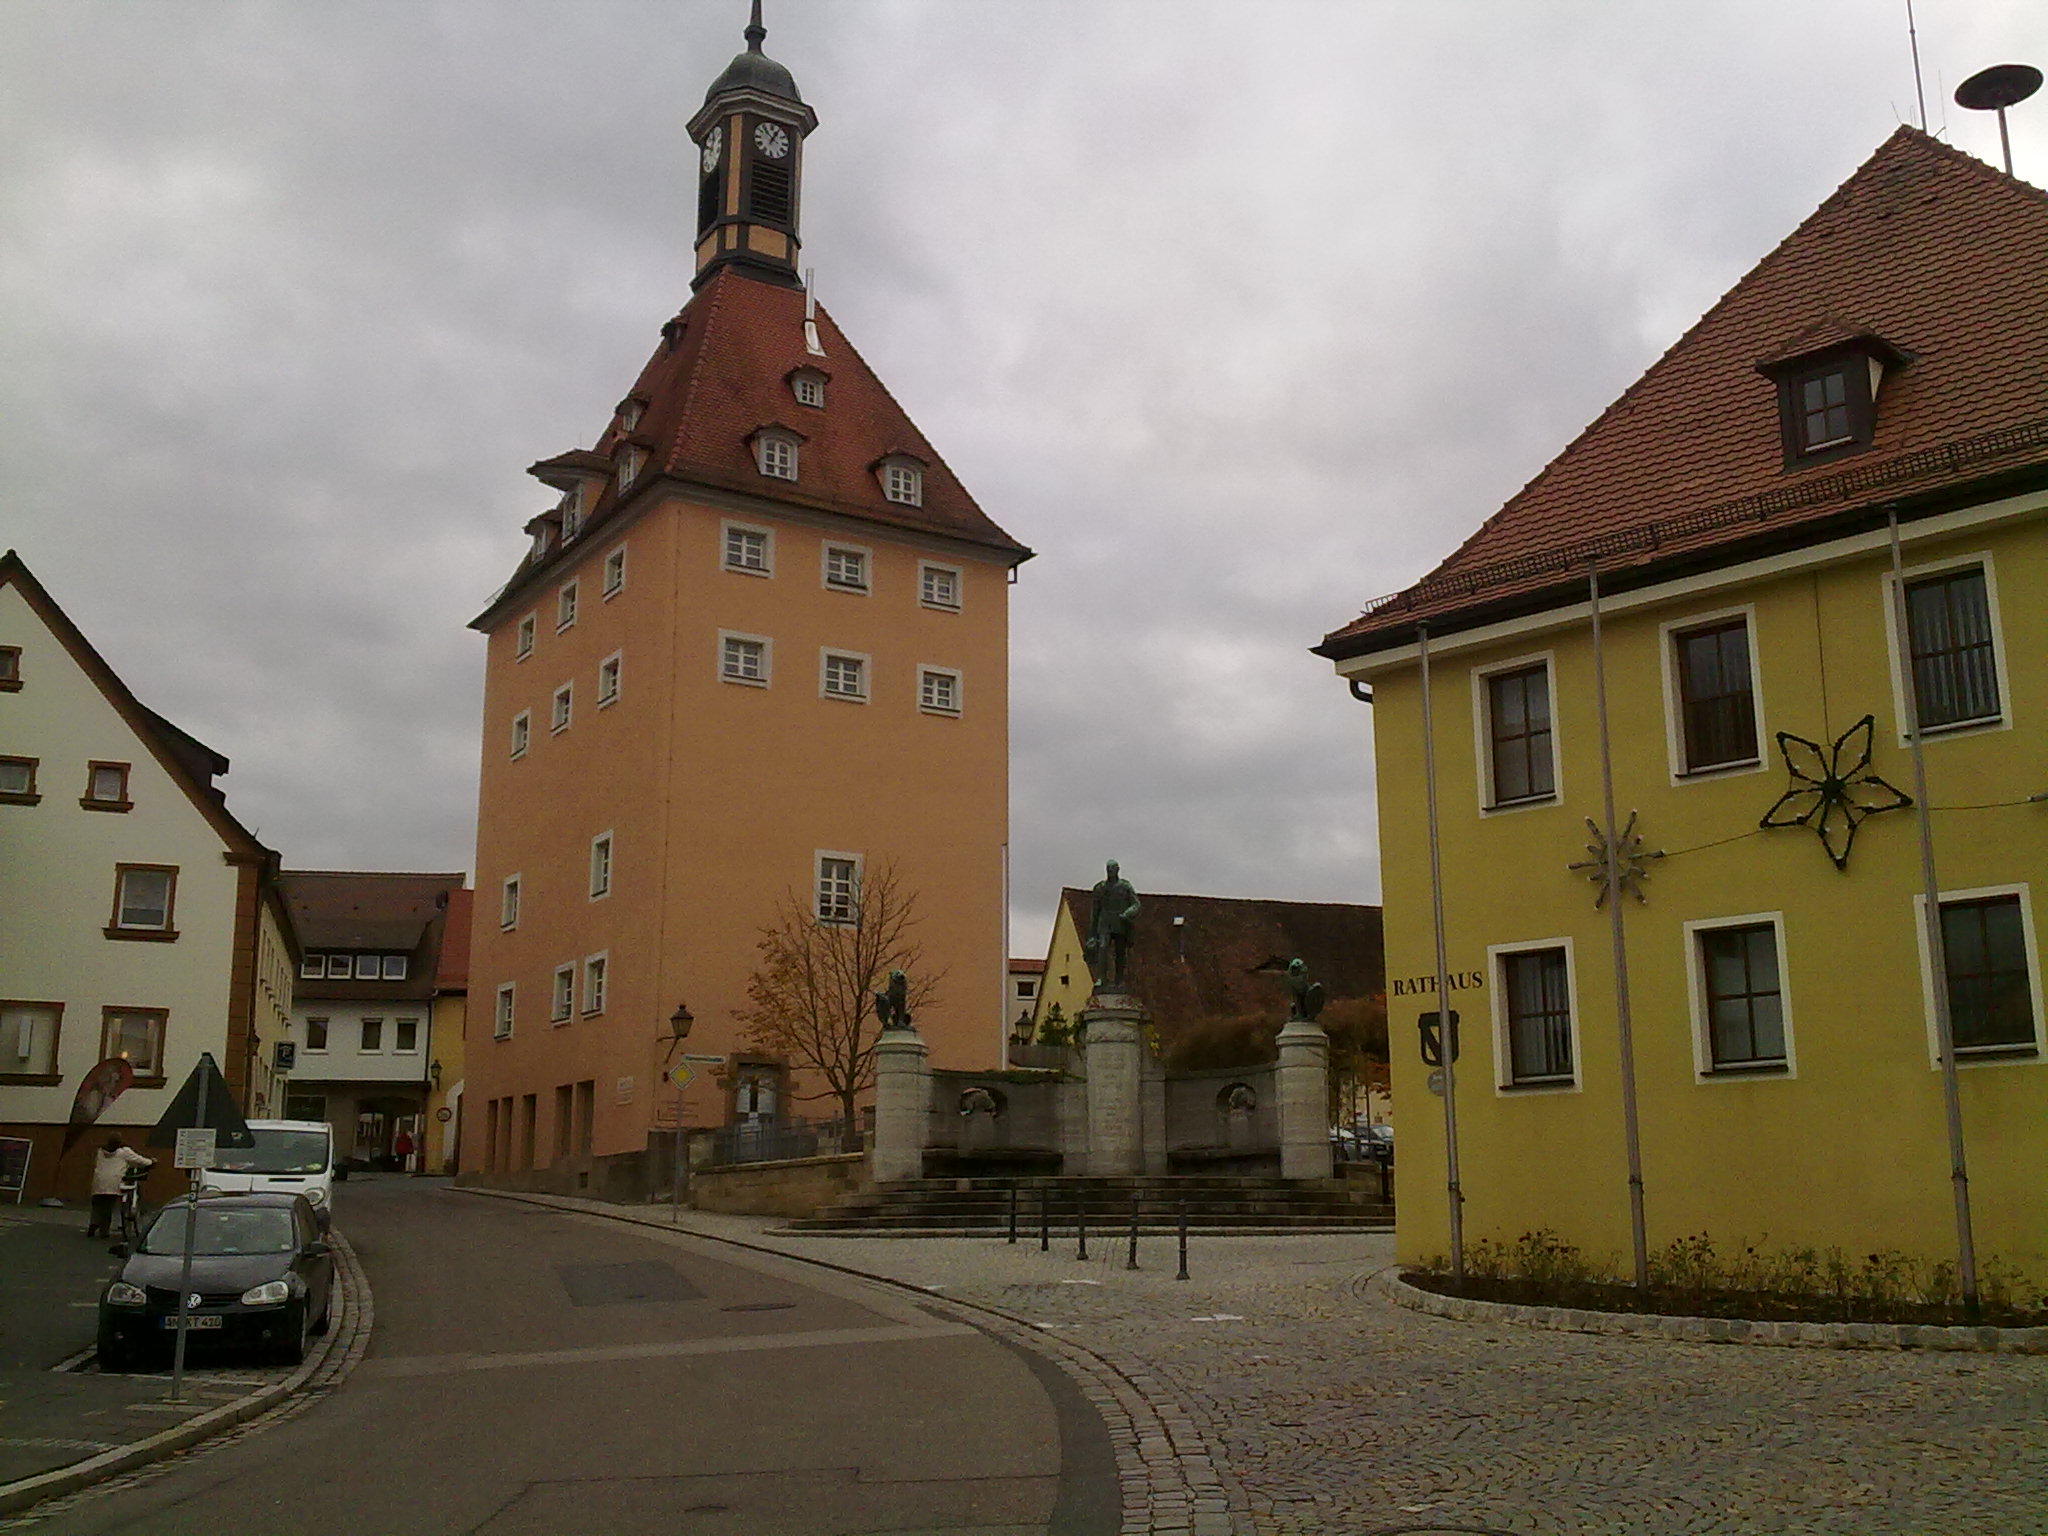 Rathaus Heilsbronn mit
Ehrenmal und Dickem Turm